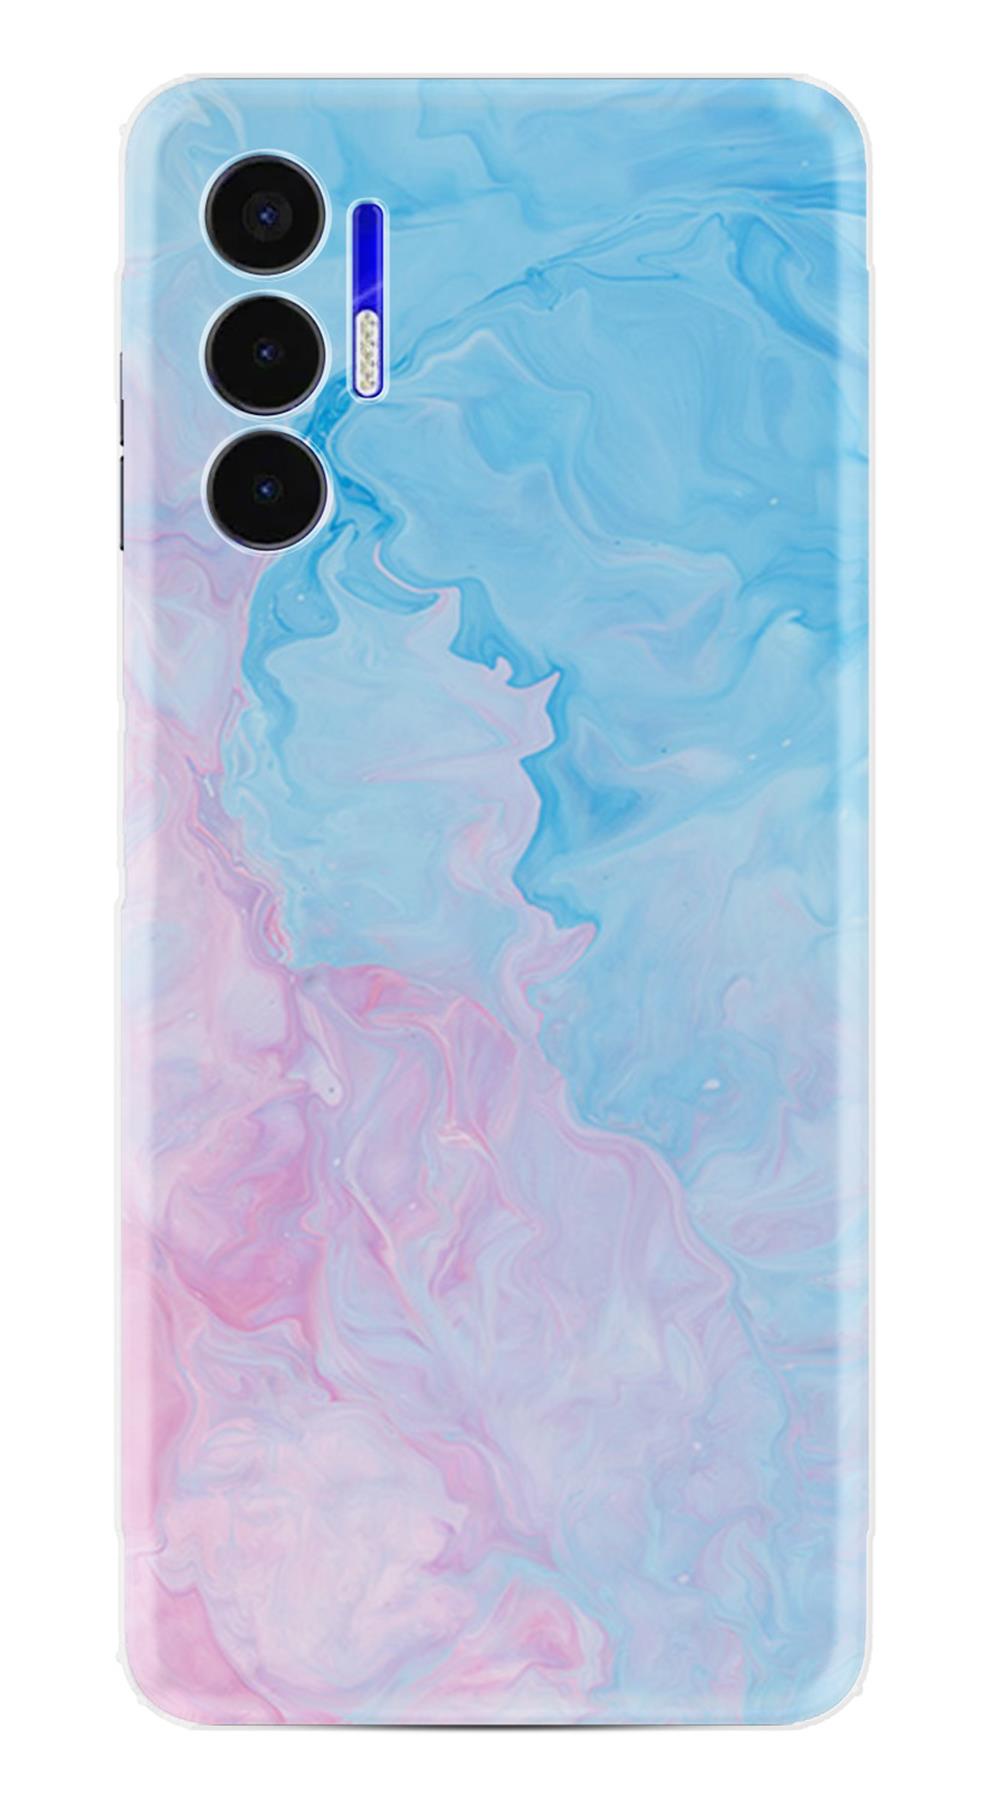 Tecno Spark 8C Kılıf Resimli Desenli Baskılı Silikon Kılıf Pink Blue  Abstract 1385